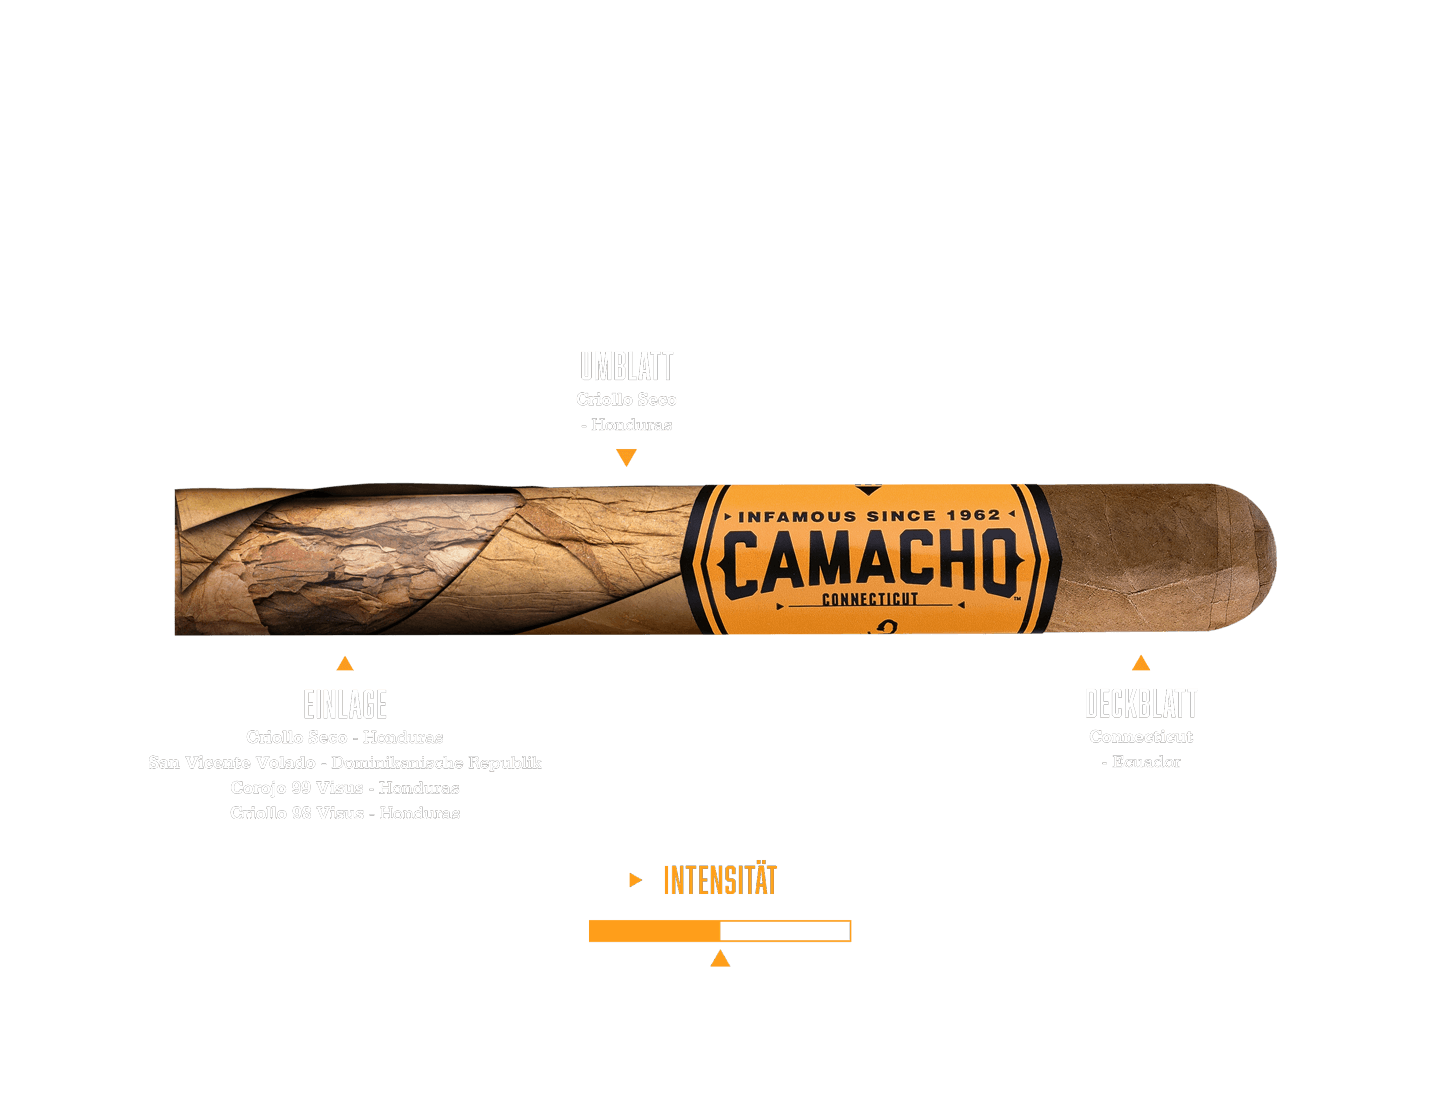 Geschmacks- und Tabakmischungsbeschreibung der Camacho Connecticut Zigarre